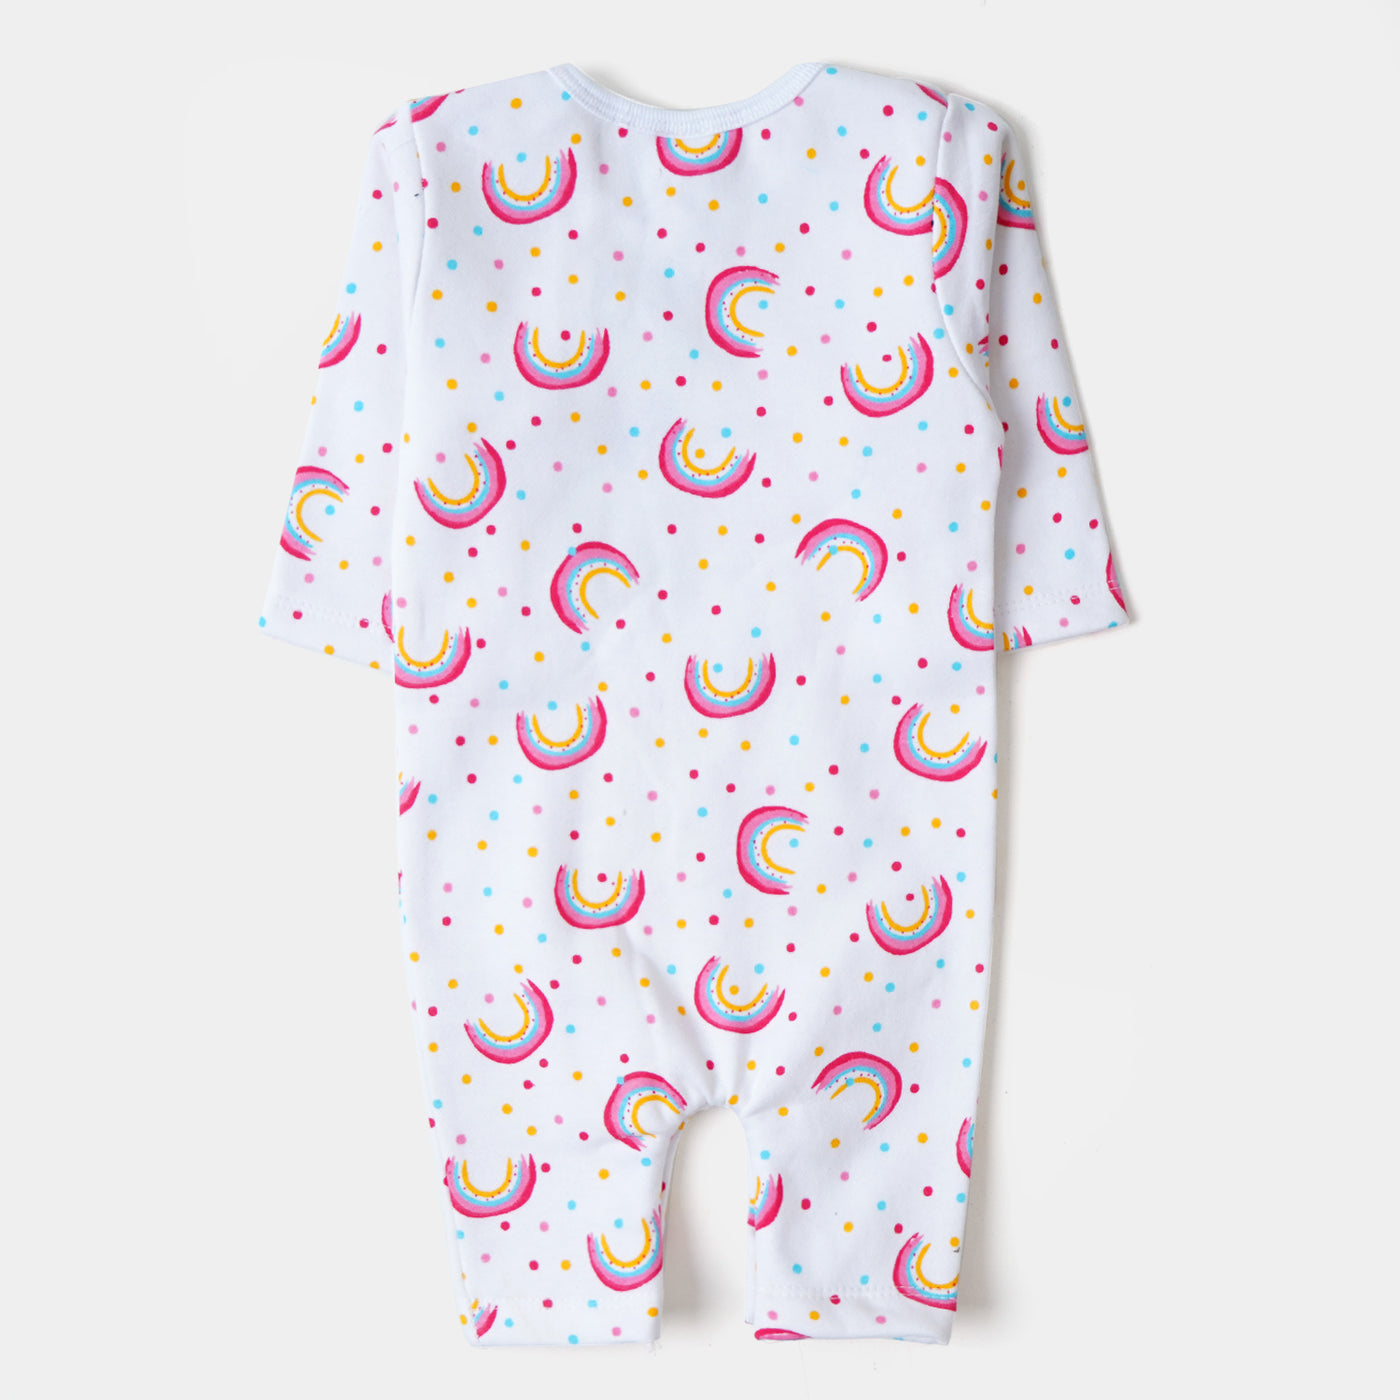 Infant Girls Knitted Romper Rainbow - White